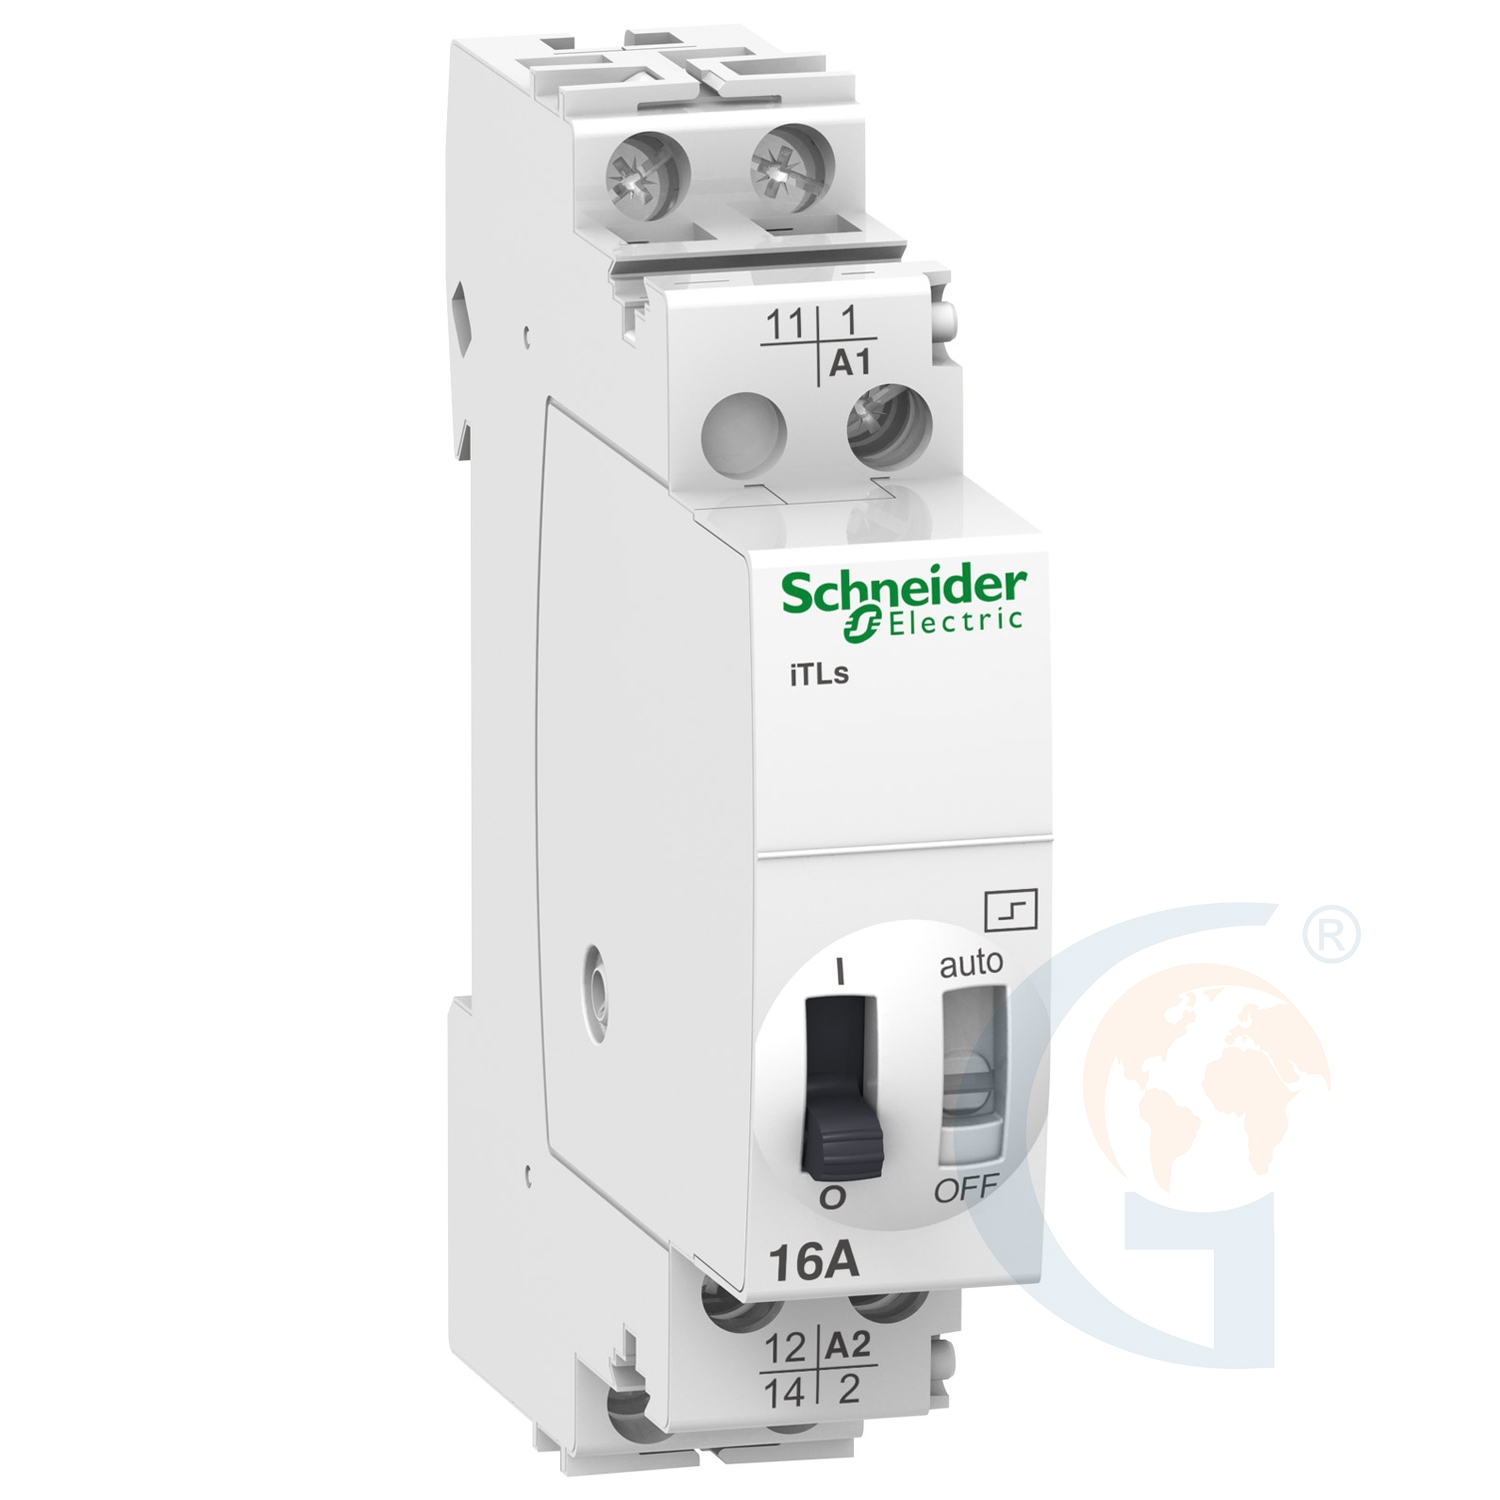 Schneider Electric A9C32111 IMPULSE RELAY ITLS – 1P – 1NO – 16A – COIL 12 VDC – 24 VAC 50/60HZ https://gesrepair.com/wp-content/uploads/2020/Schneider/Schneider_Electric_A9C32111_.jpg